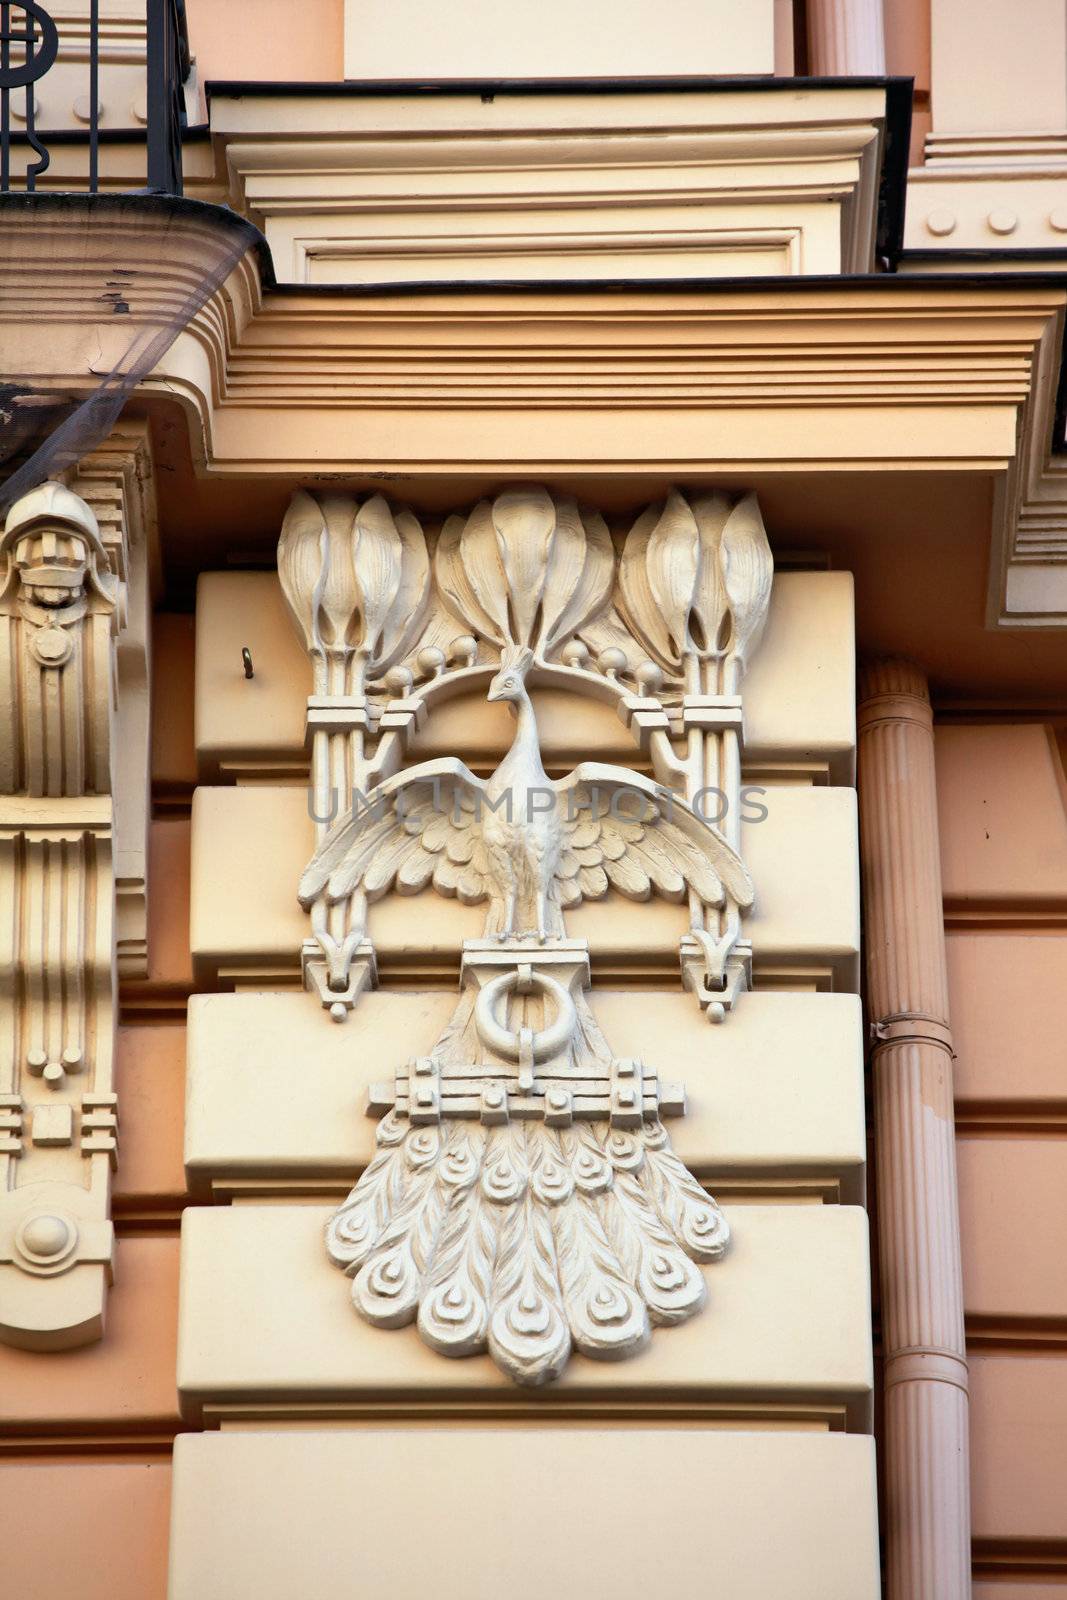 Detail of Art Nouveau or Jugenstil building by ints